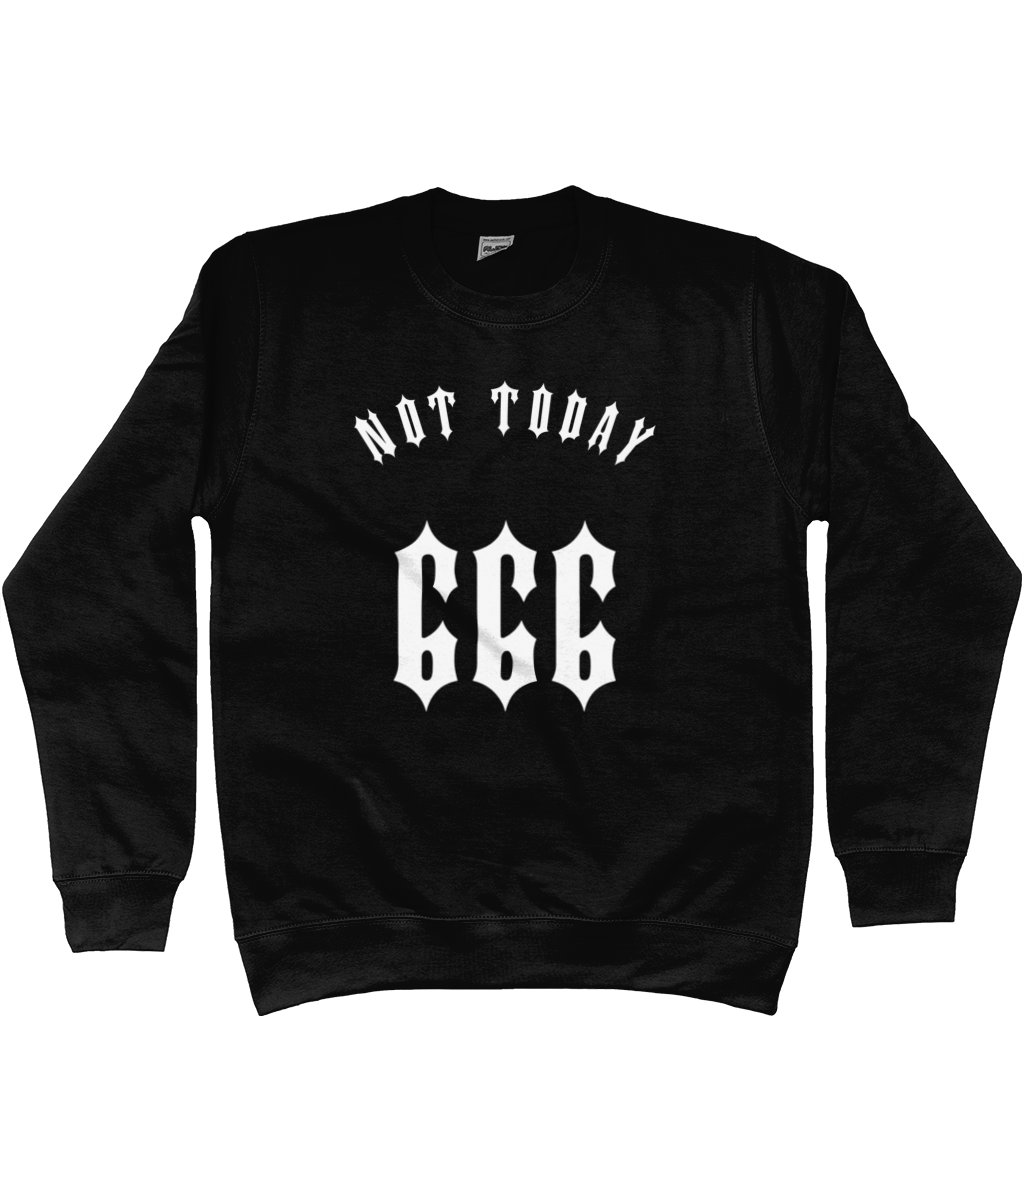 Not Today 666 - Sweatshirt